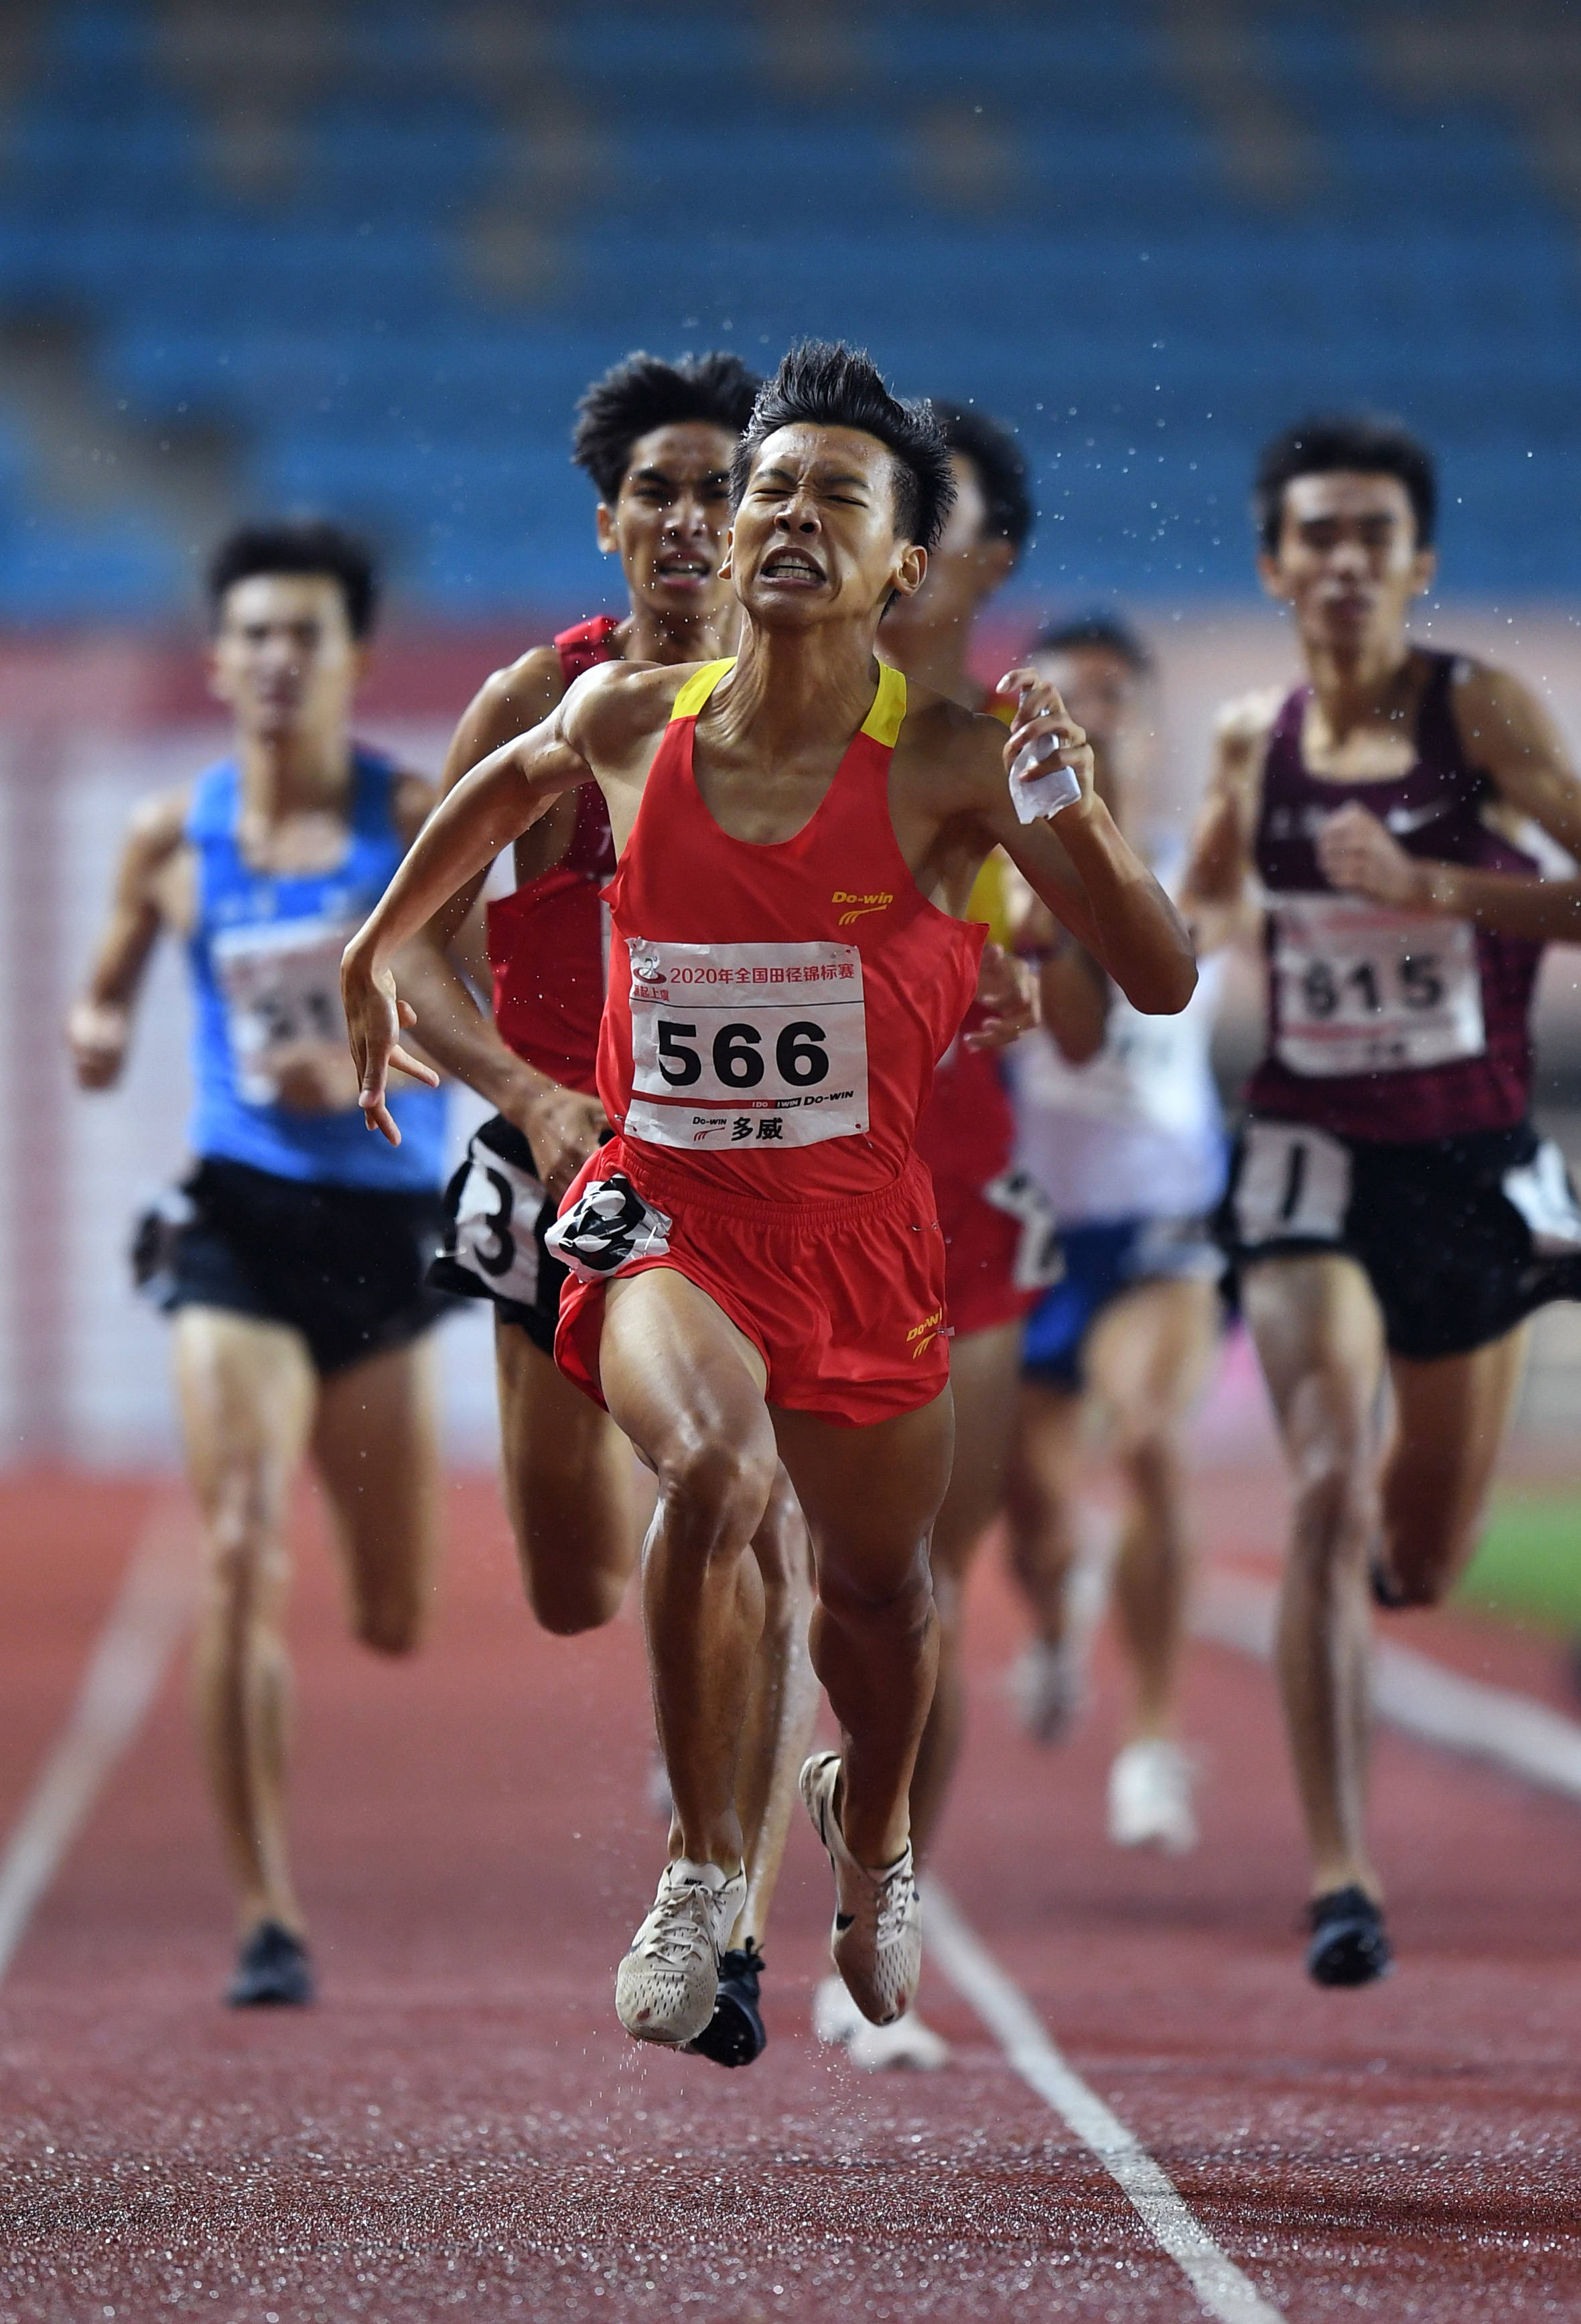 田径——全国锦标赛:男子800米决赛赛况